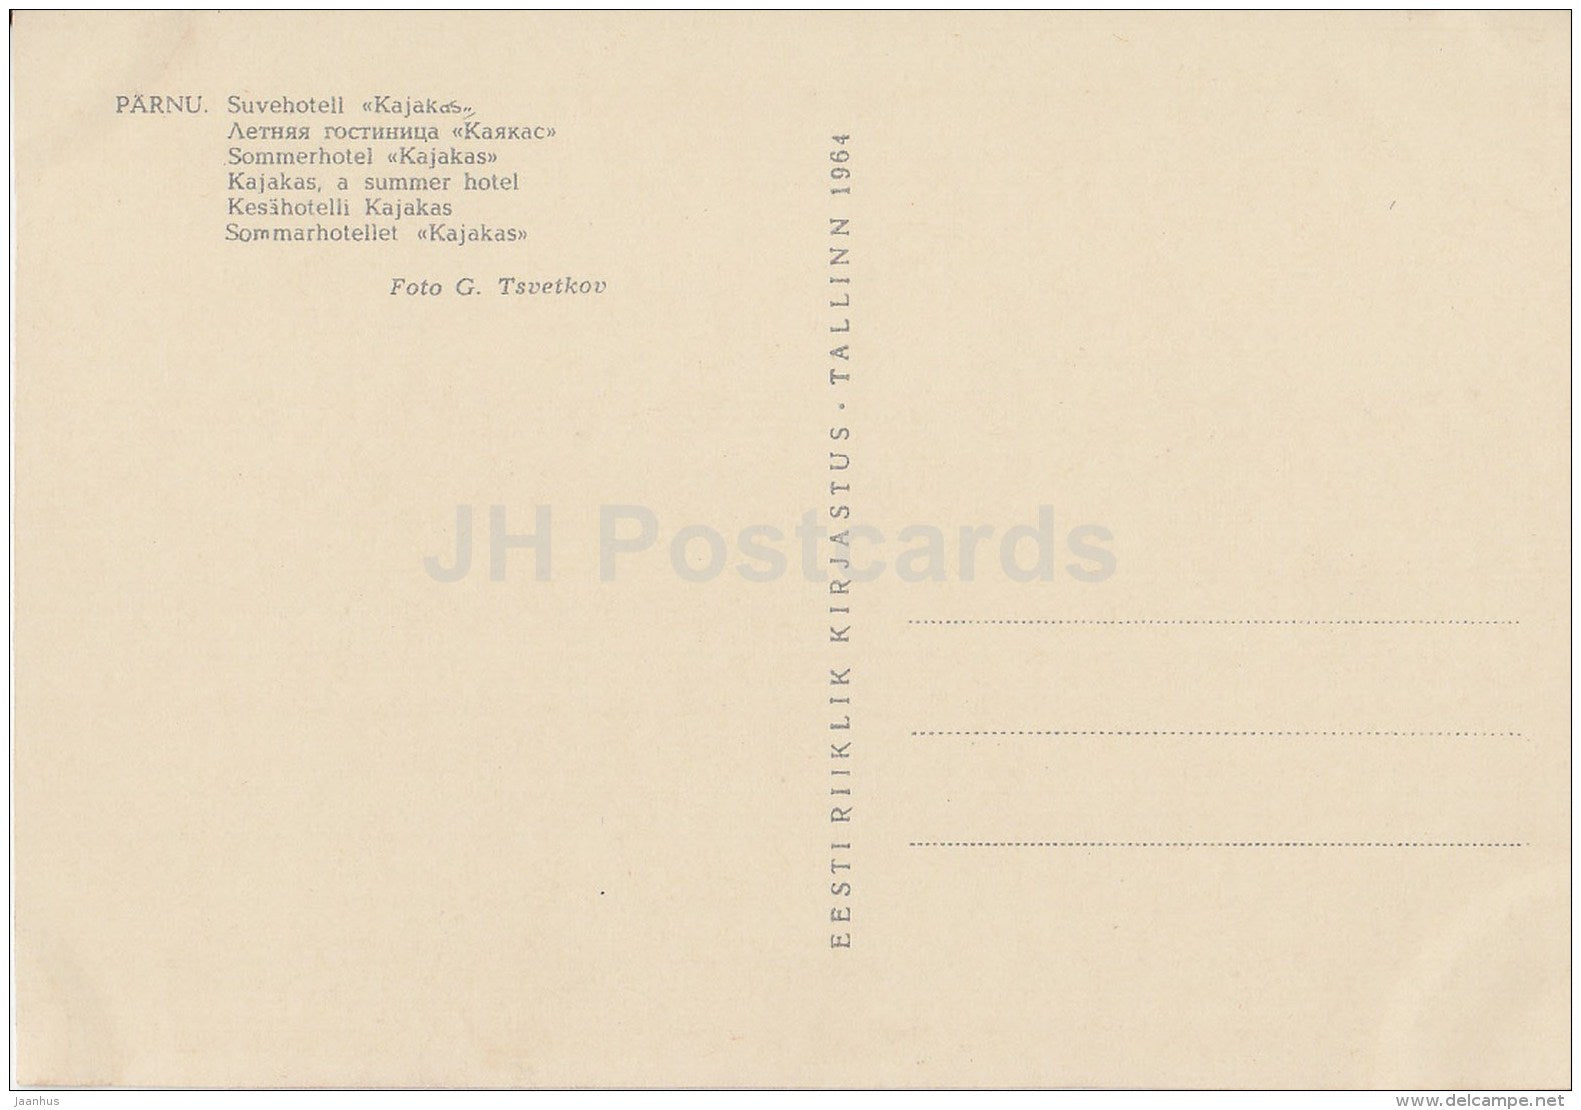 Summer Hotel Kajakas (Seagull) - Pärnu - 1964 - Estonia USSR - unused - JH Postcards